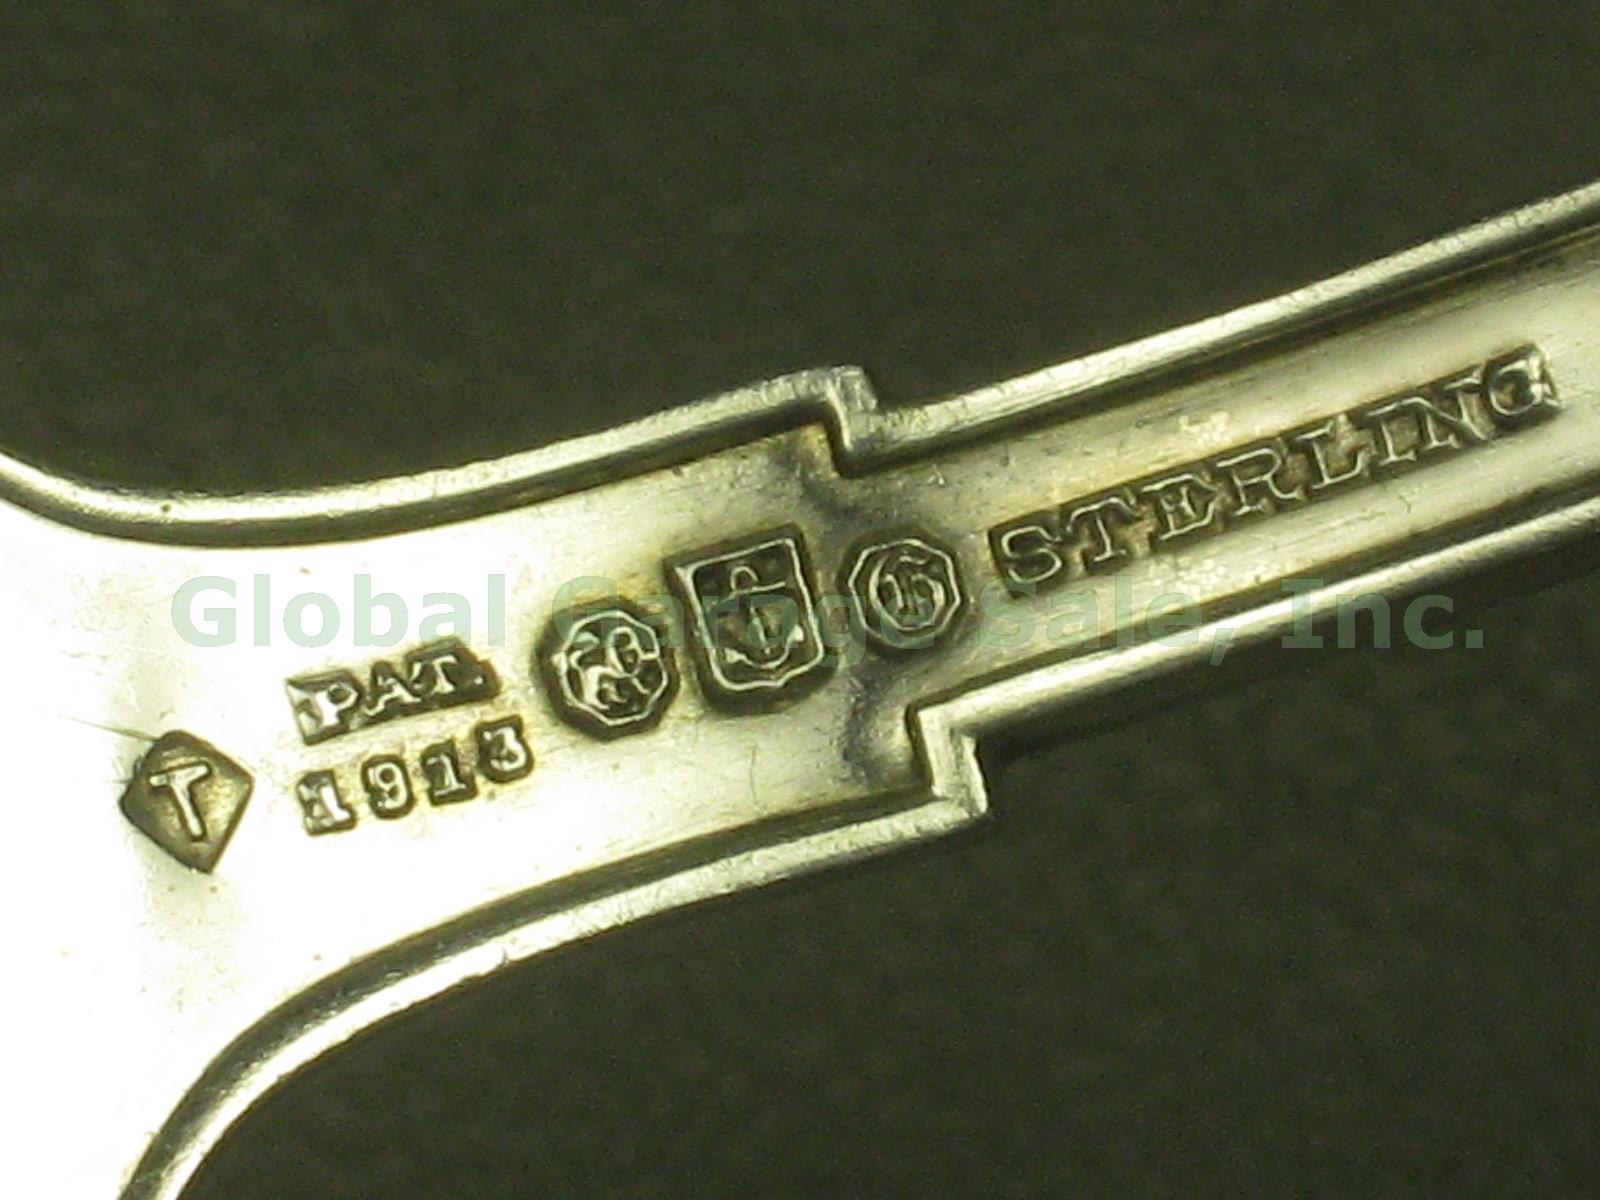 66 Vtg 1913 Gorham Etruscan Greek Key Sterling Silver Flatware Set 1751.5+ Grams 11